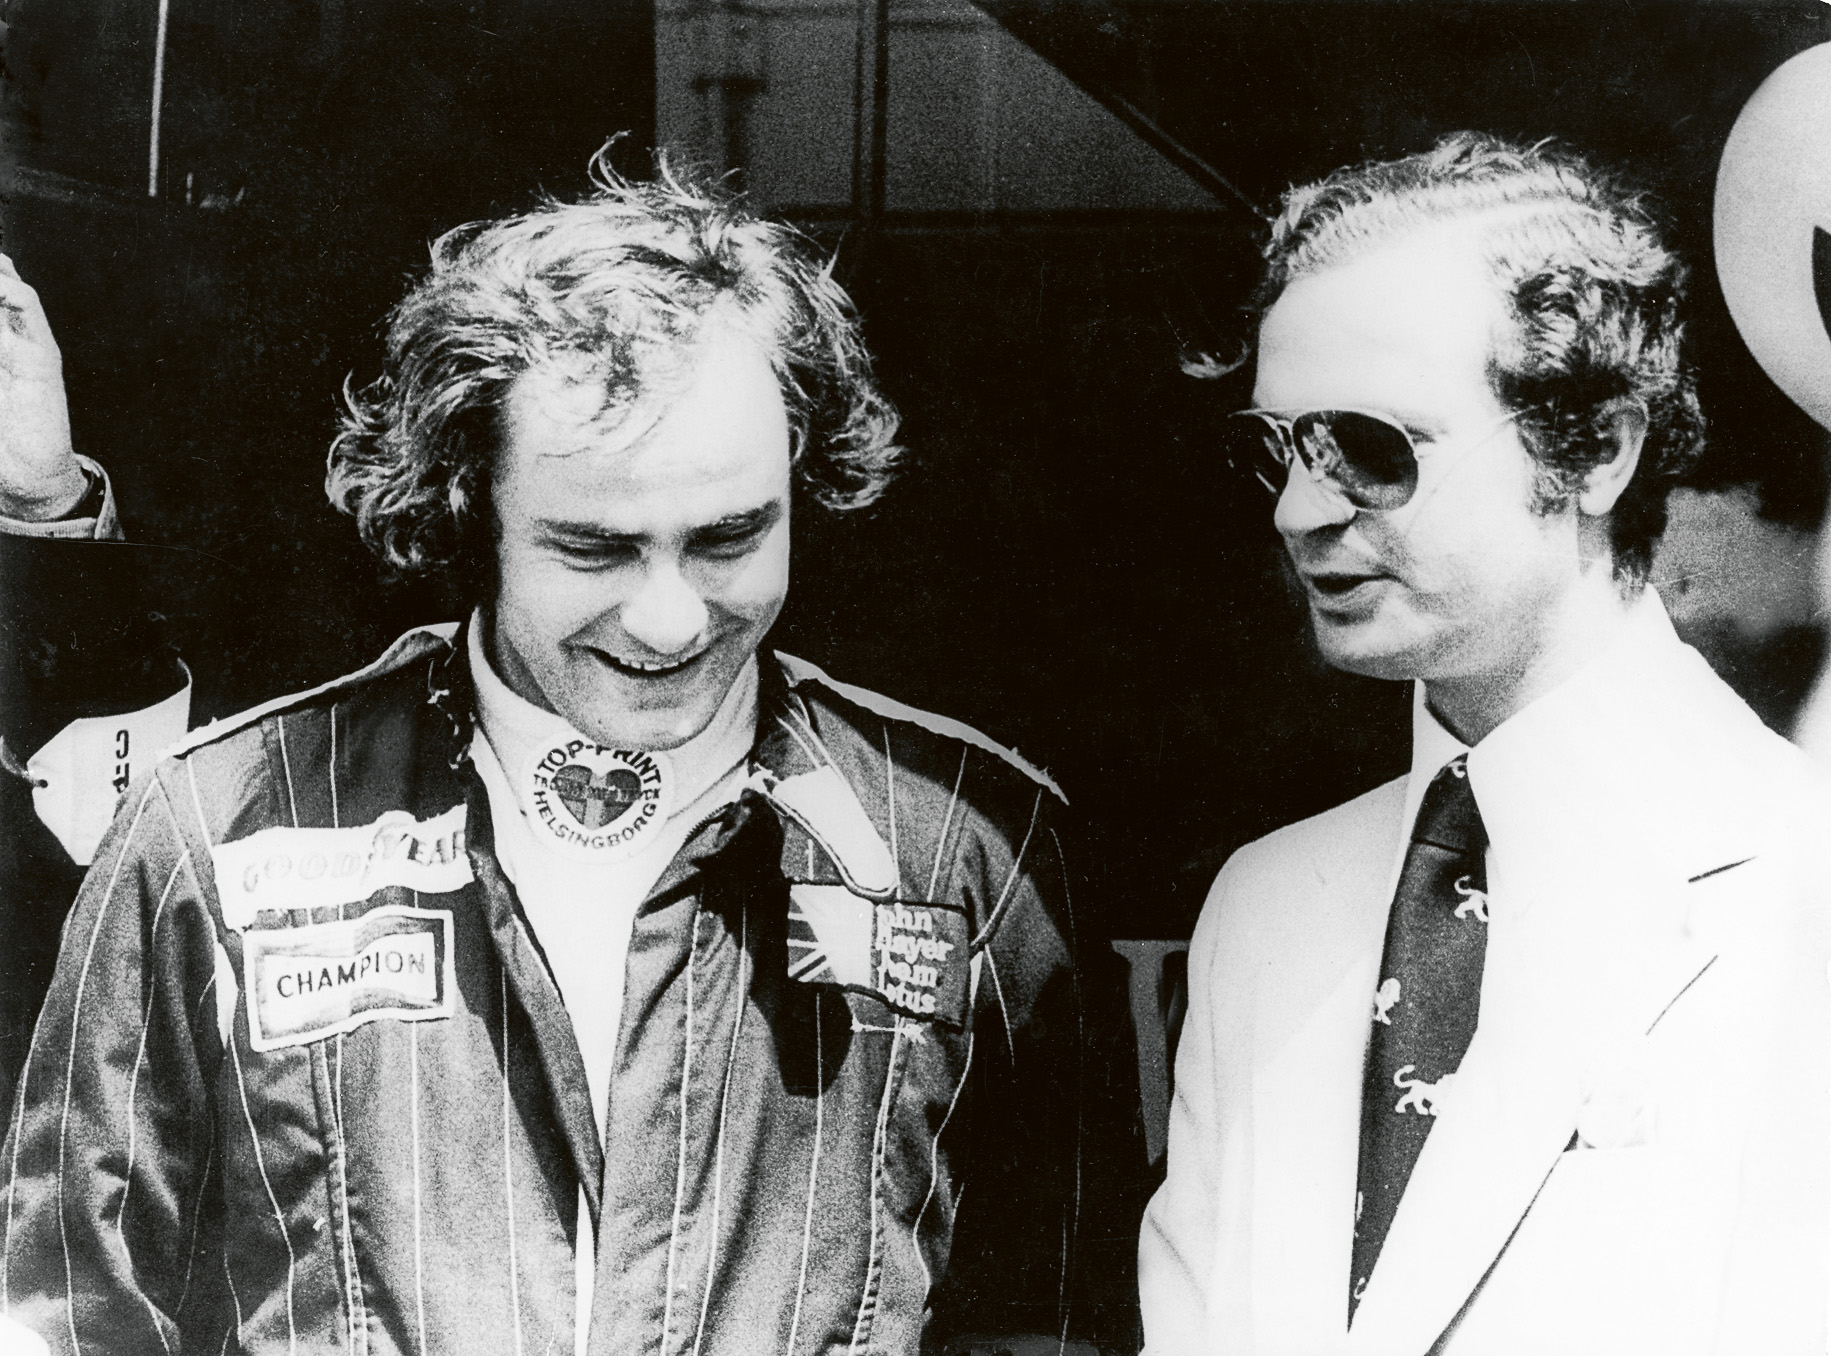 Helsingborgs racerstjärna Gunnar Nilsson i sällskap med kung Carl XVI Gustav på en bild från 1970-talet. Foto från Idrottsmuseet